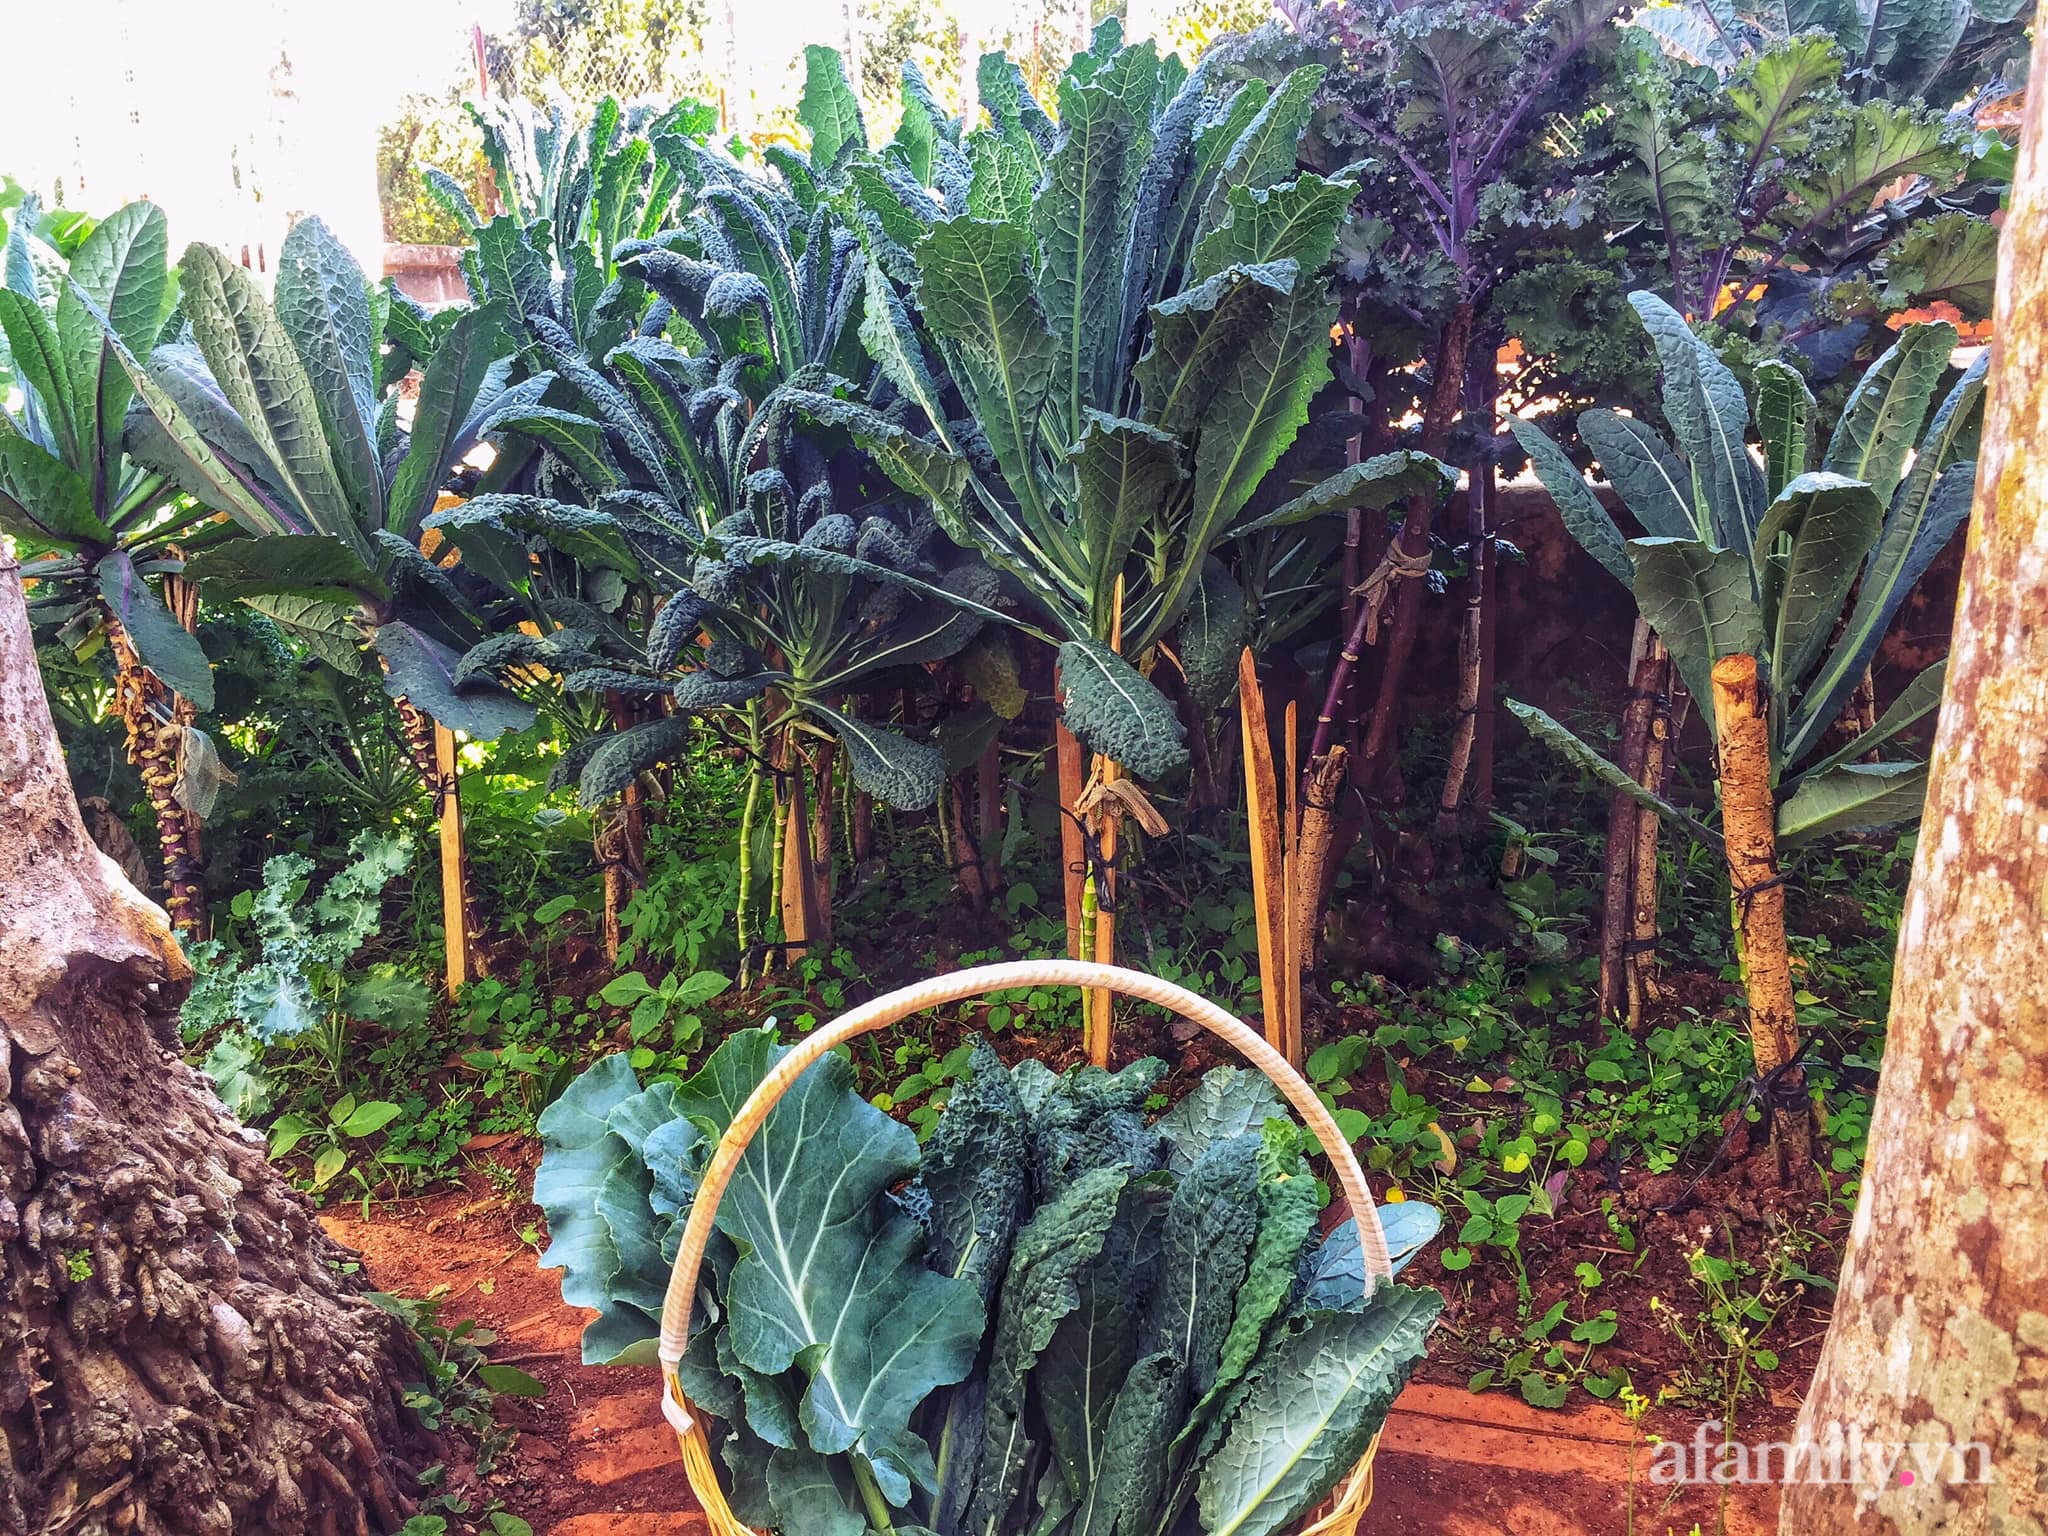 Khu vườn quanh năm tốt tươi rau quả sạch của mẹ mệnh Hỏa trồng cho con trai thưởng thức ở Đắk Lắk - Ảnh 8.